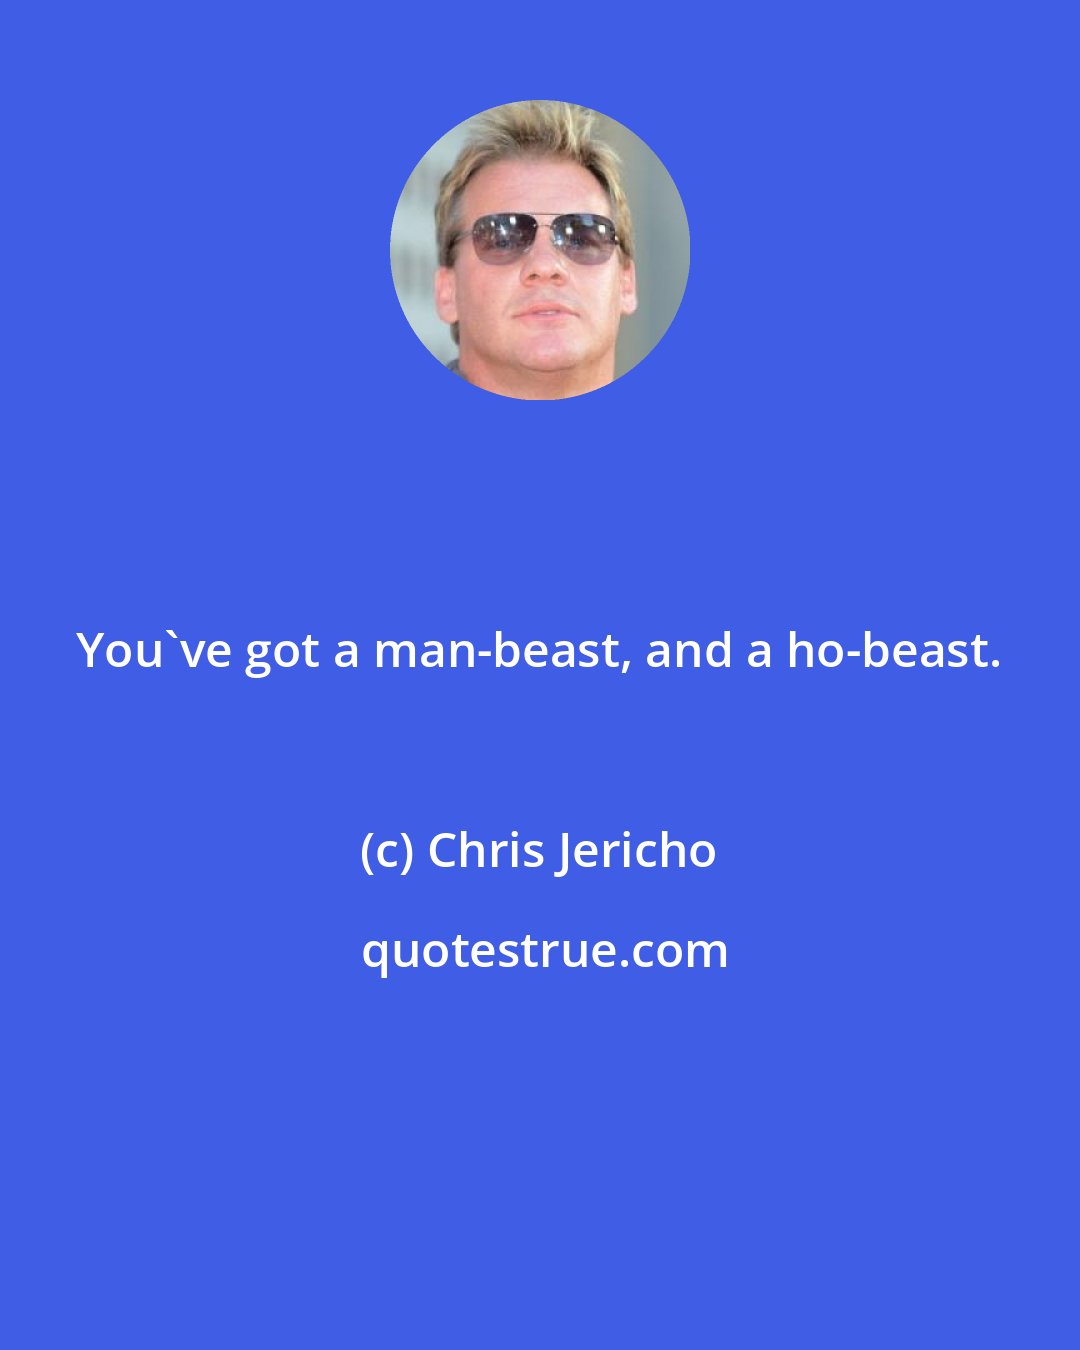 Chris Jericho: You've got a man-beast, and a ho-beast.